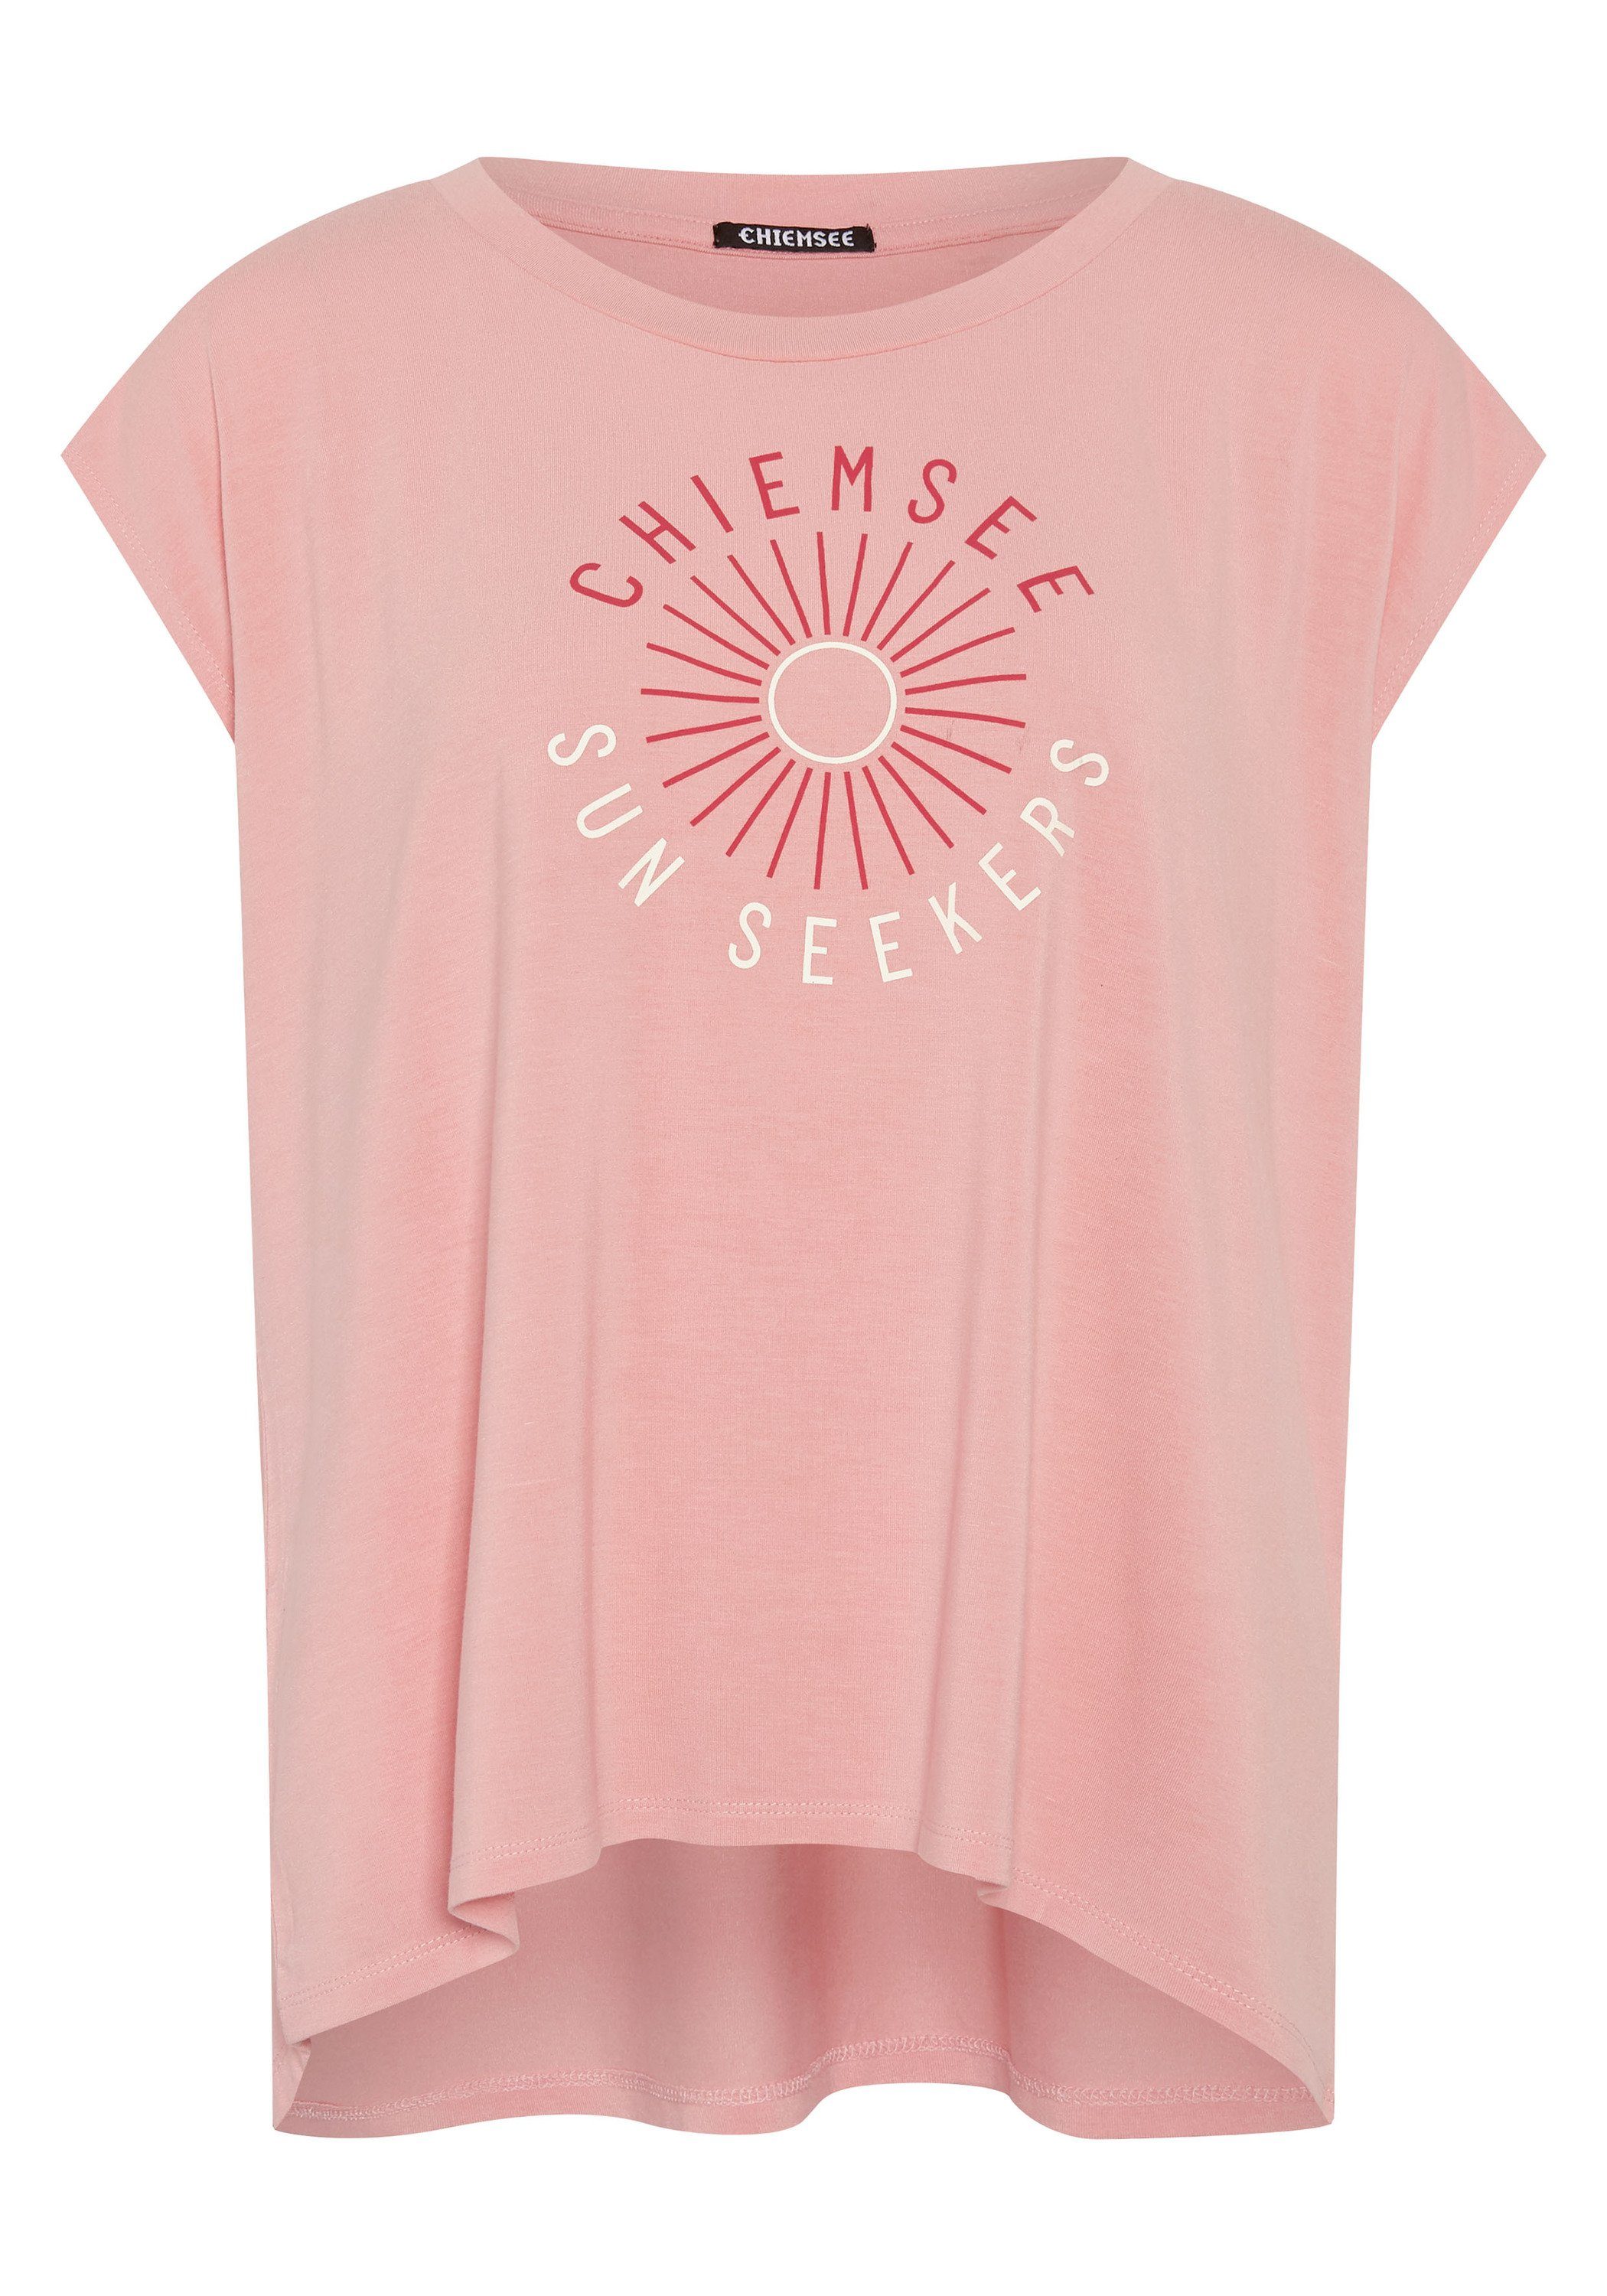 Chiemsee Print-Shirt T-Shirt mit Schriftzug und Motiv 1 14-1521 Peaches N' Cream